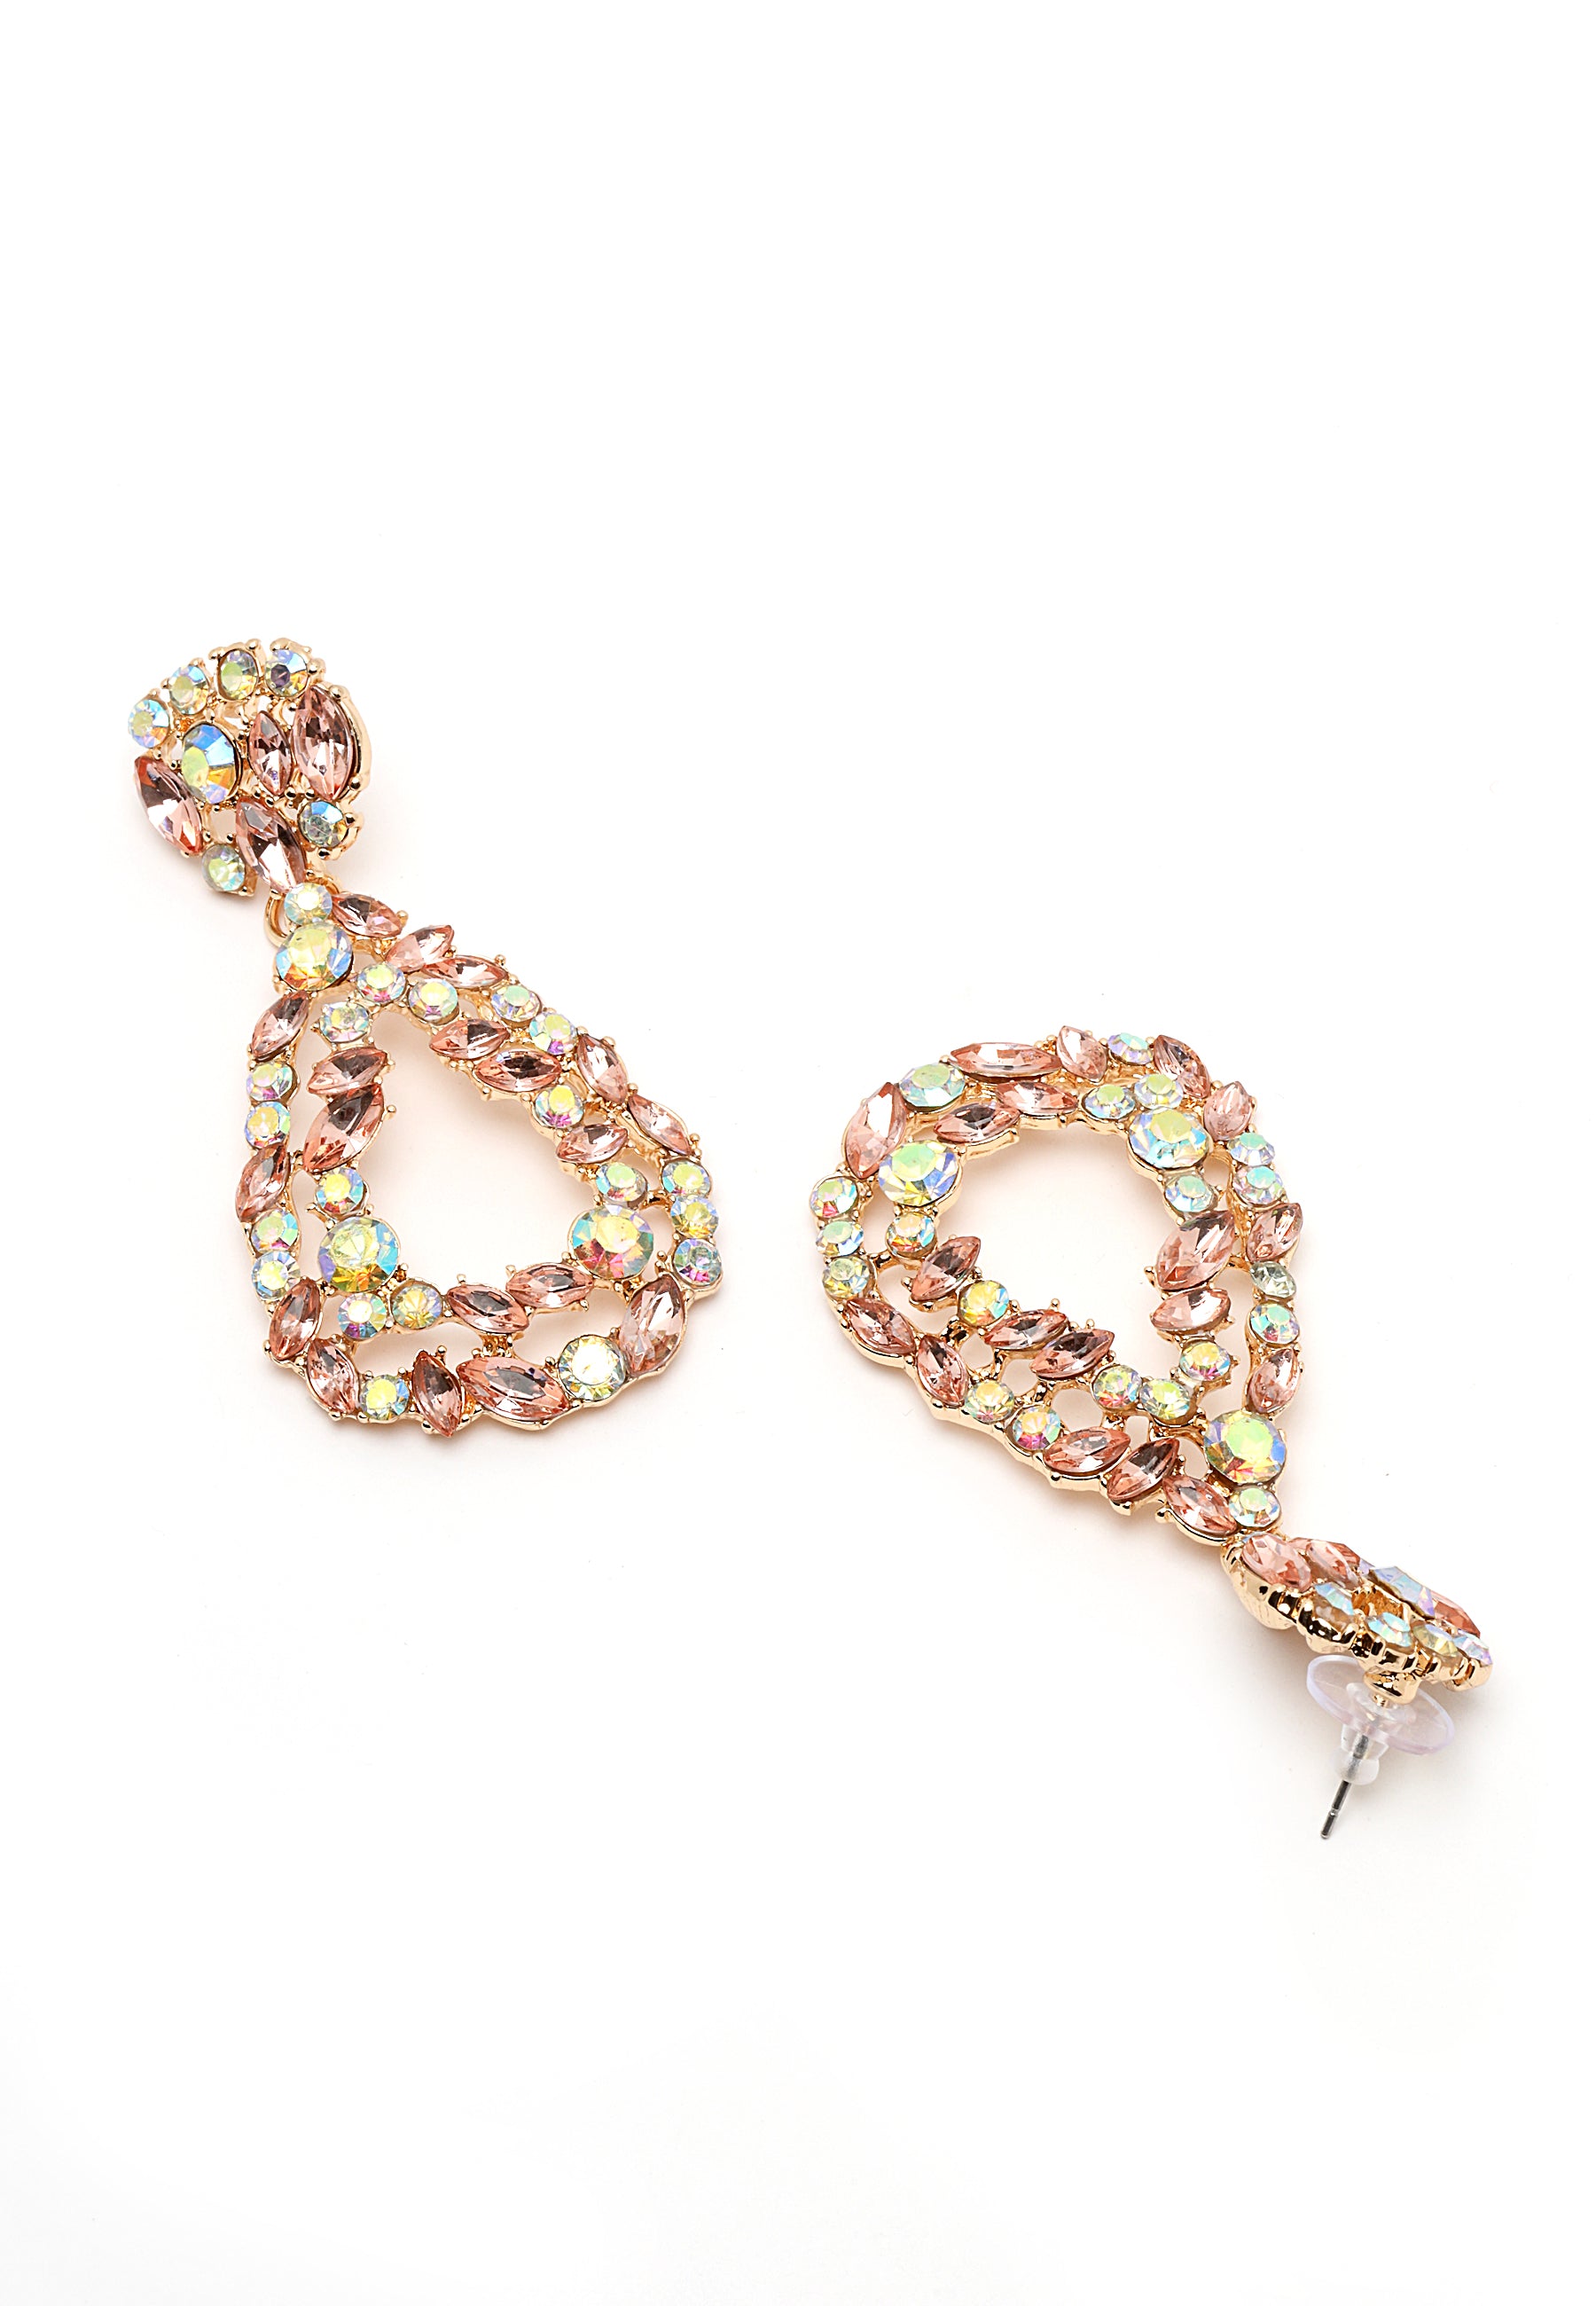 Multi-colored drop earrings